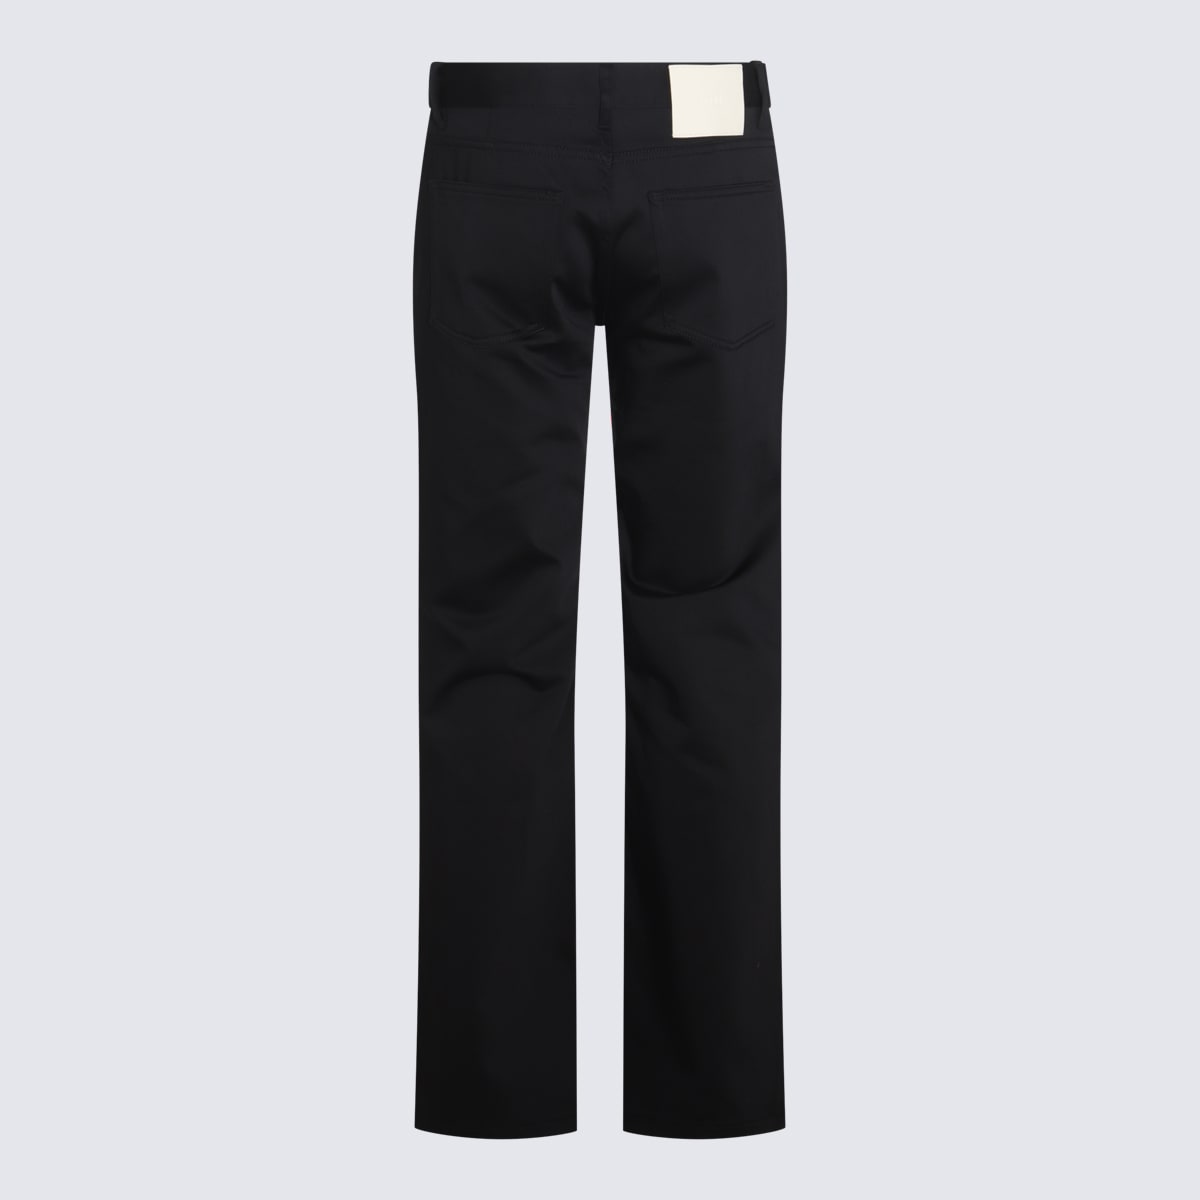 Shop Ami Alexandre Mattiussi Black Denim Cotton Jeans